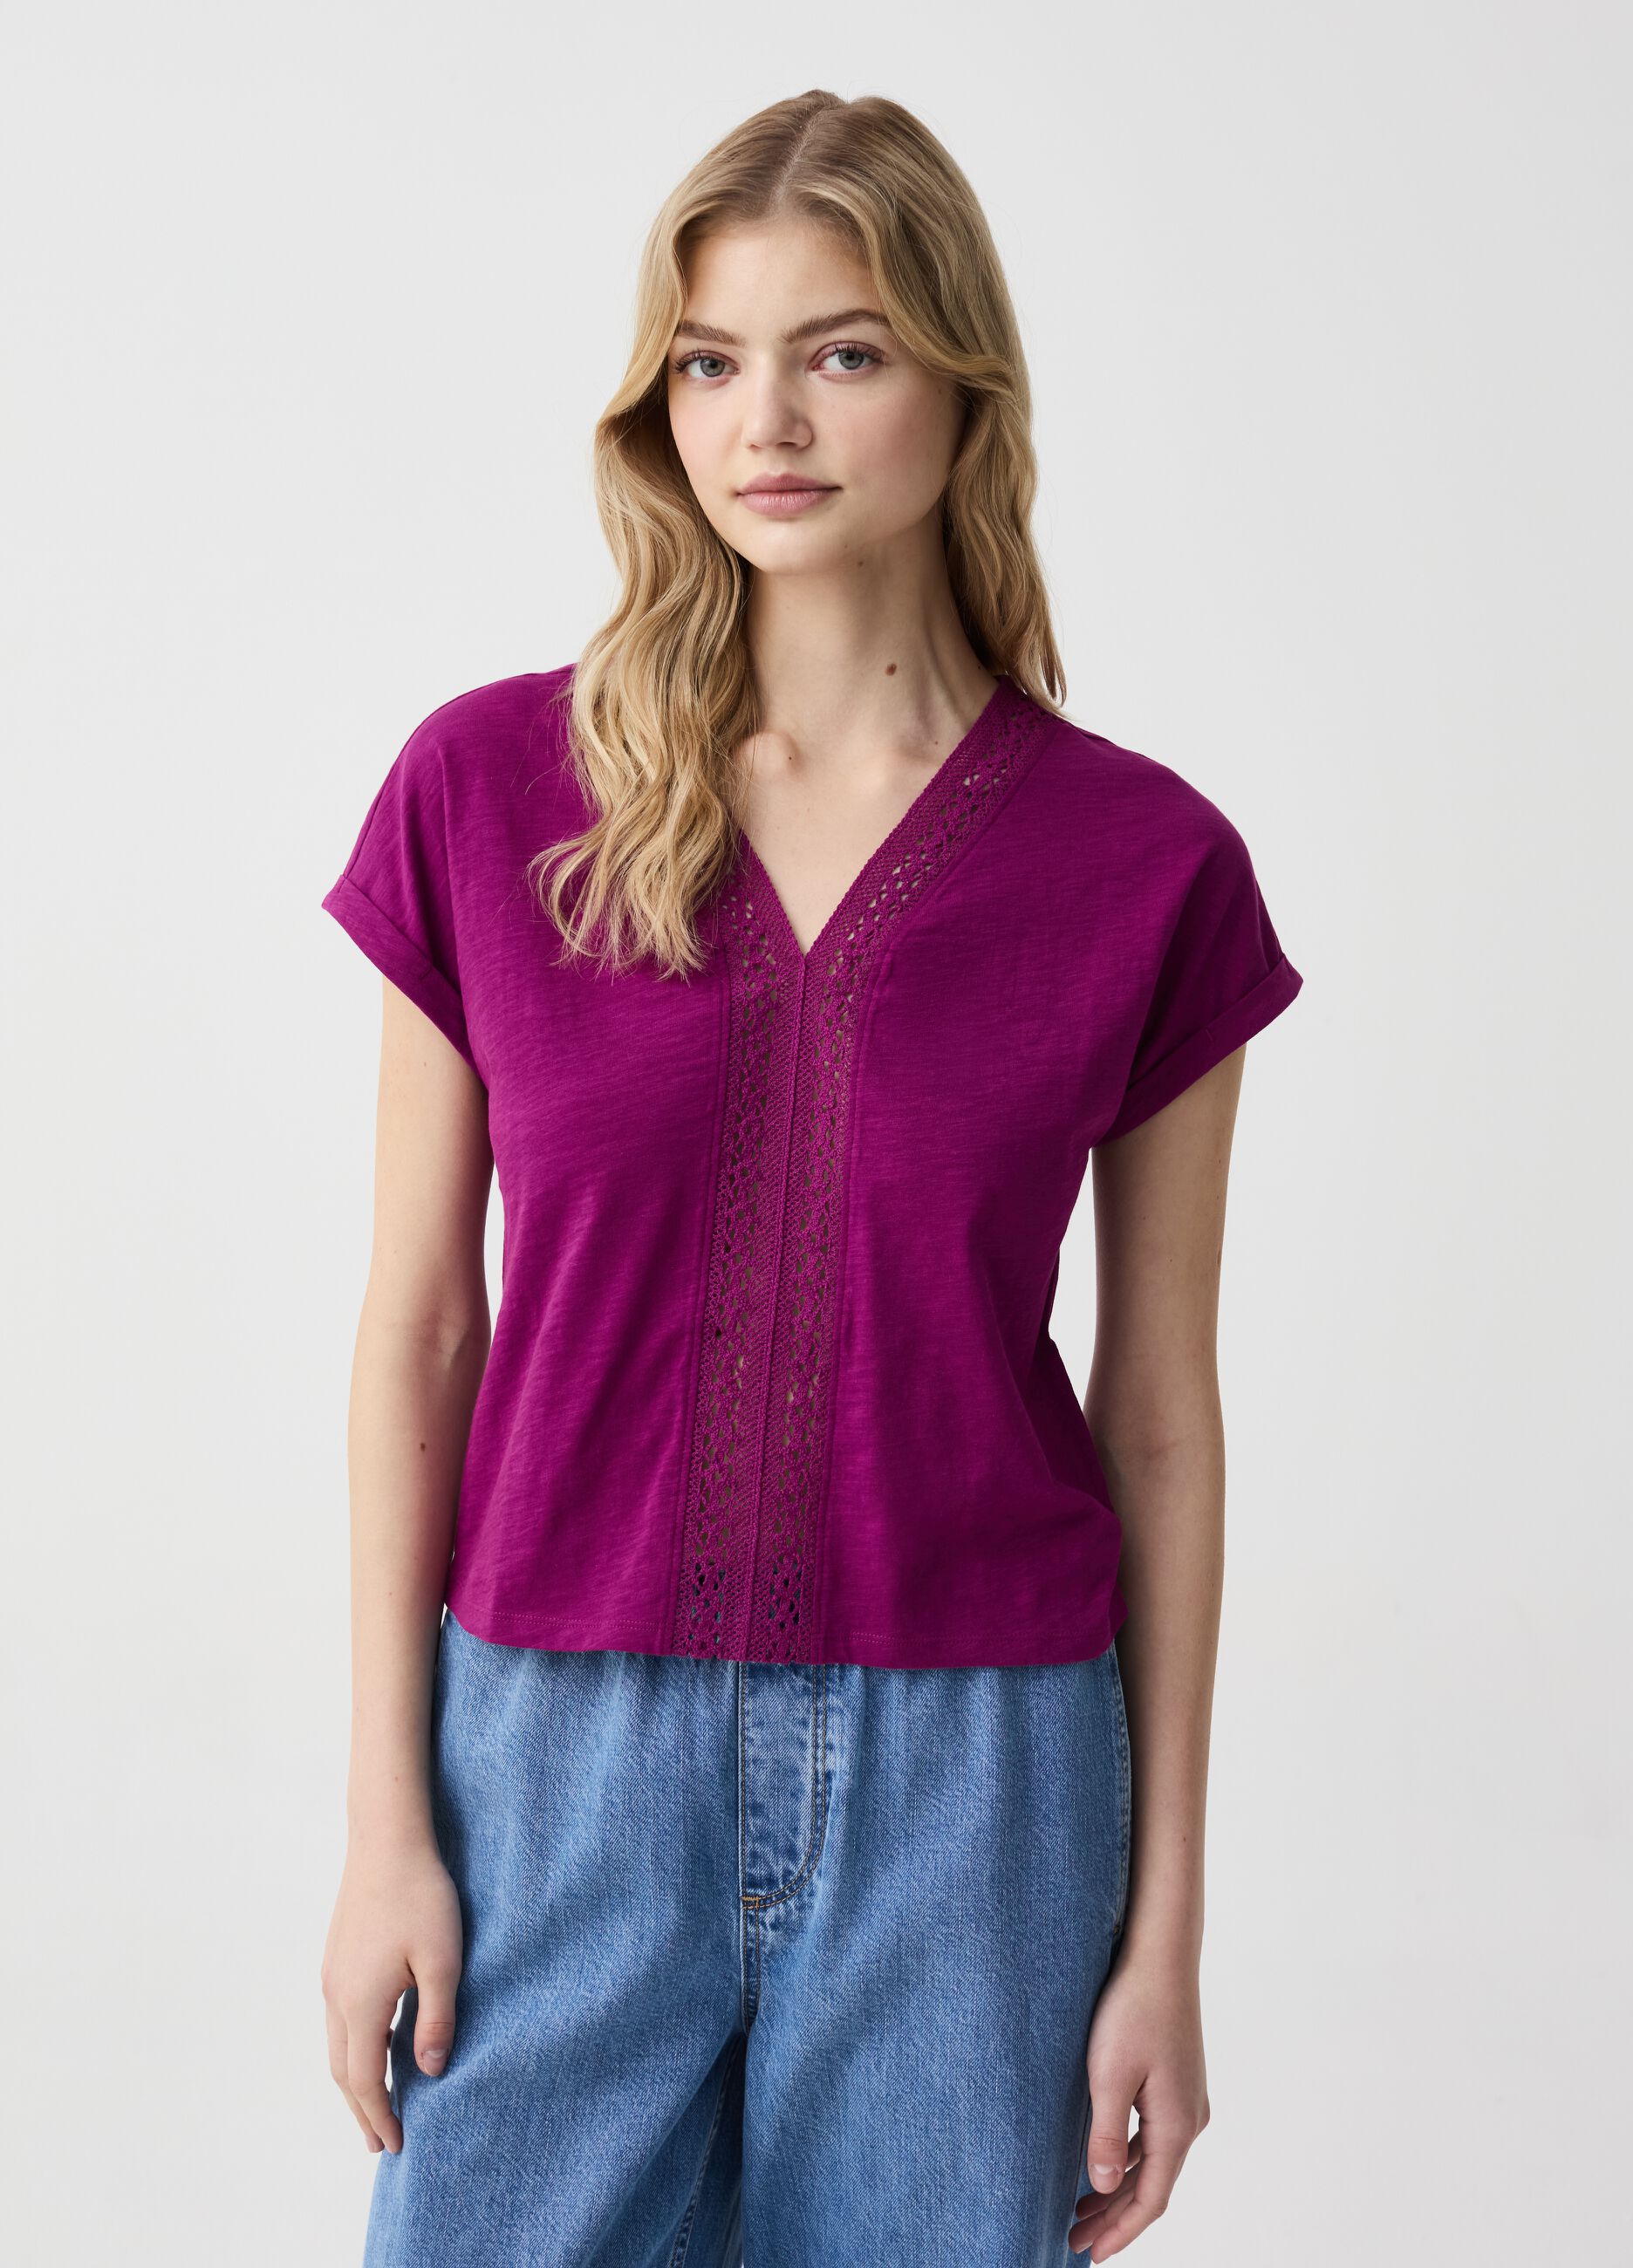 Cotton T-shirt with crochet insert